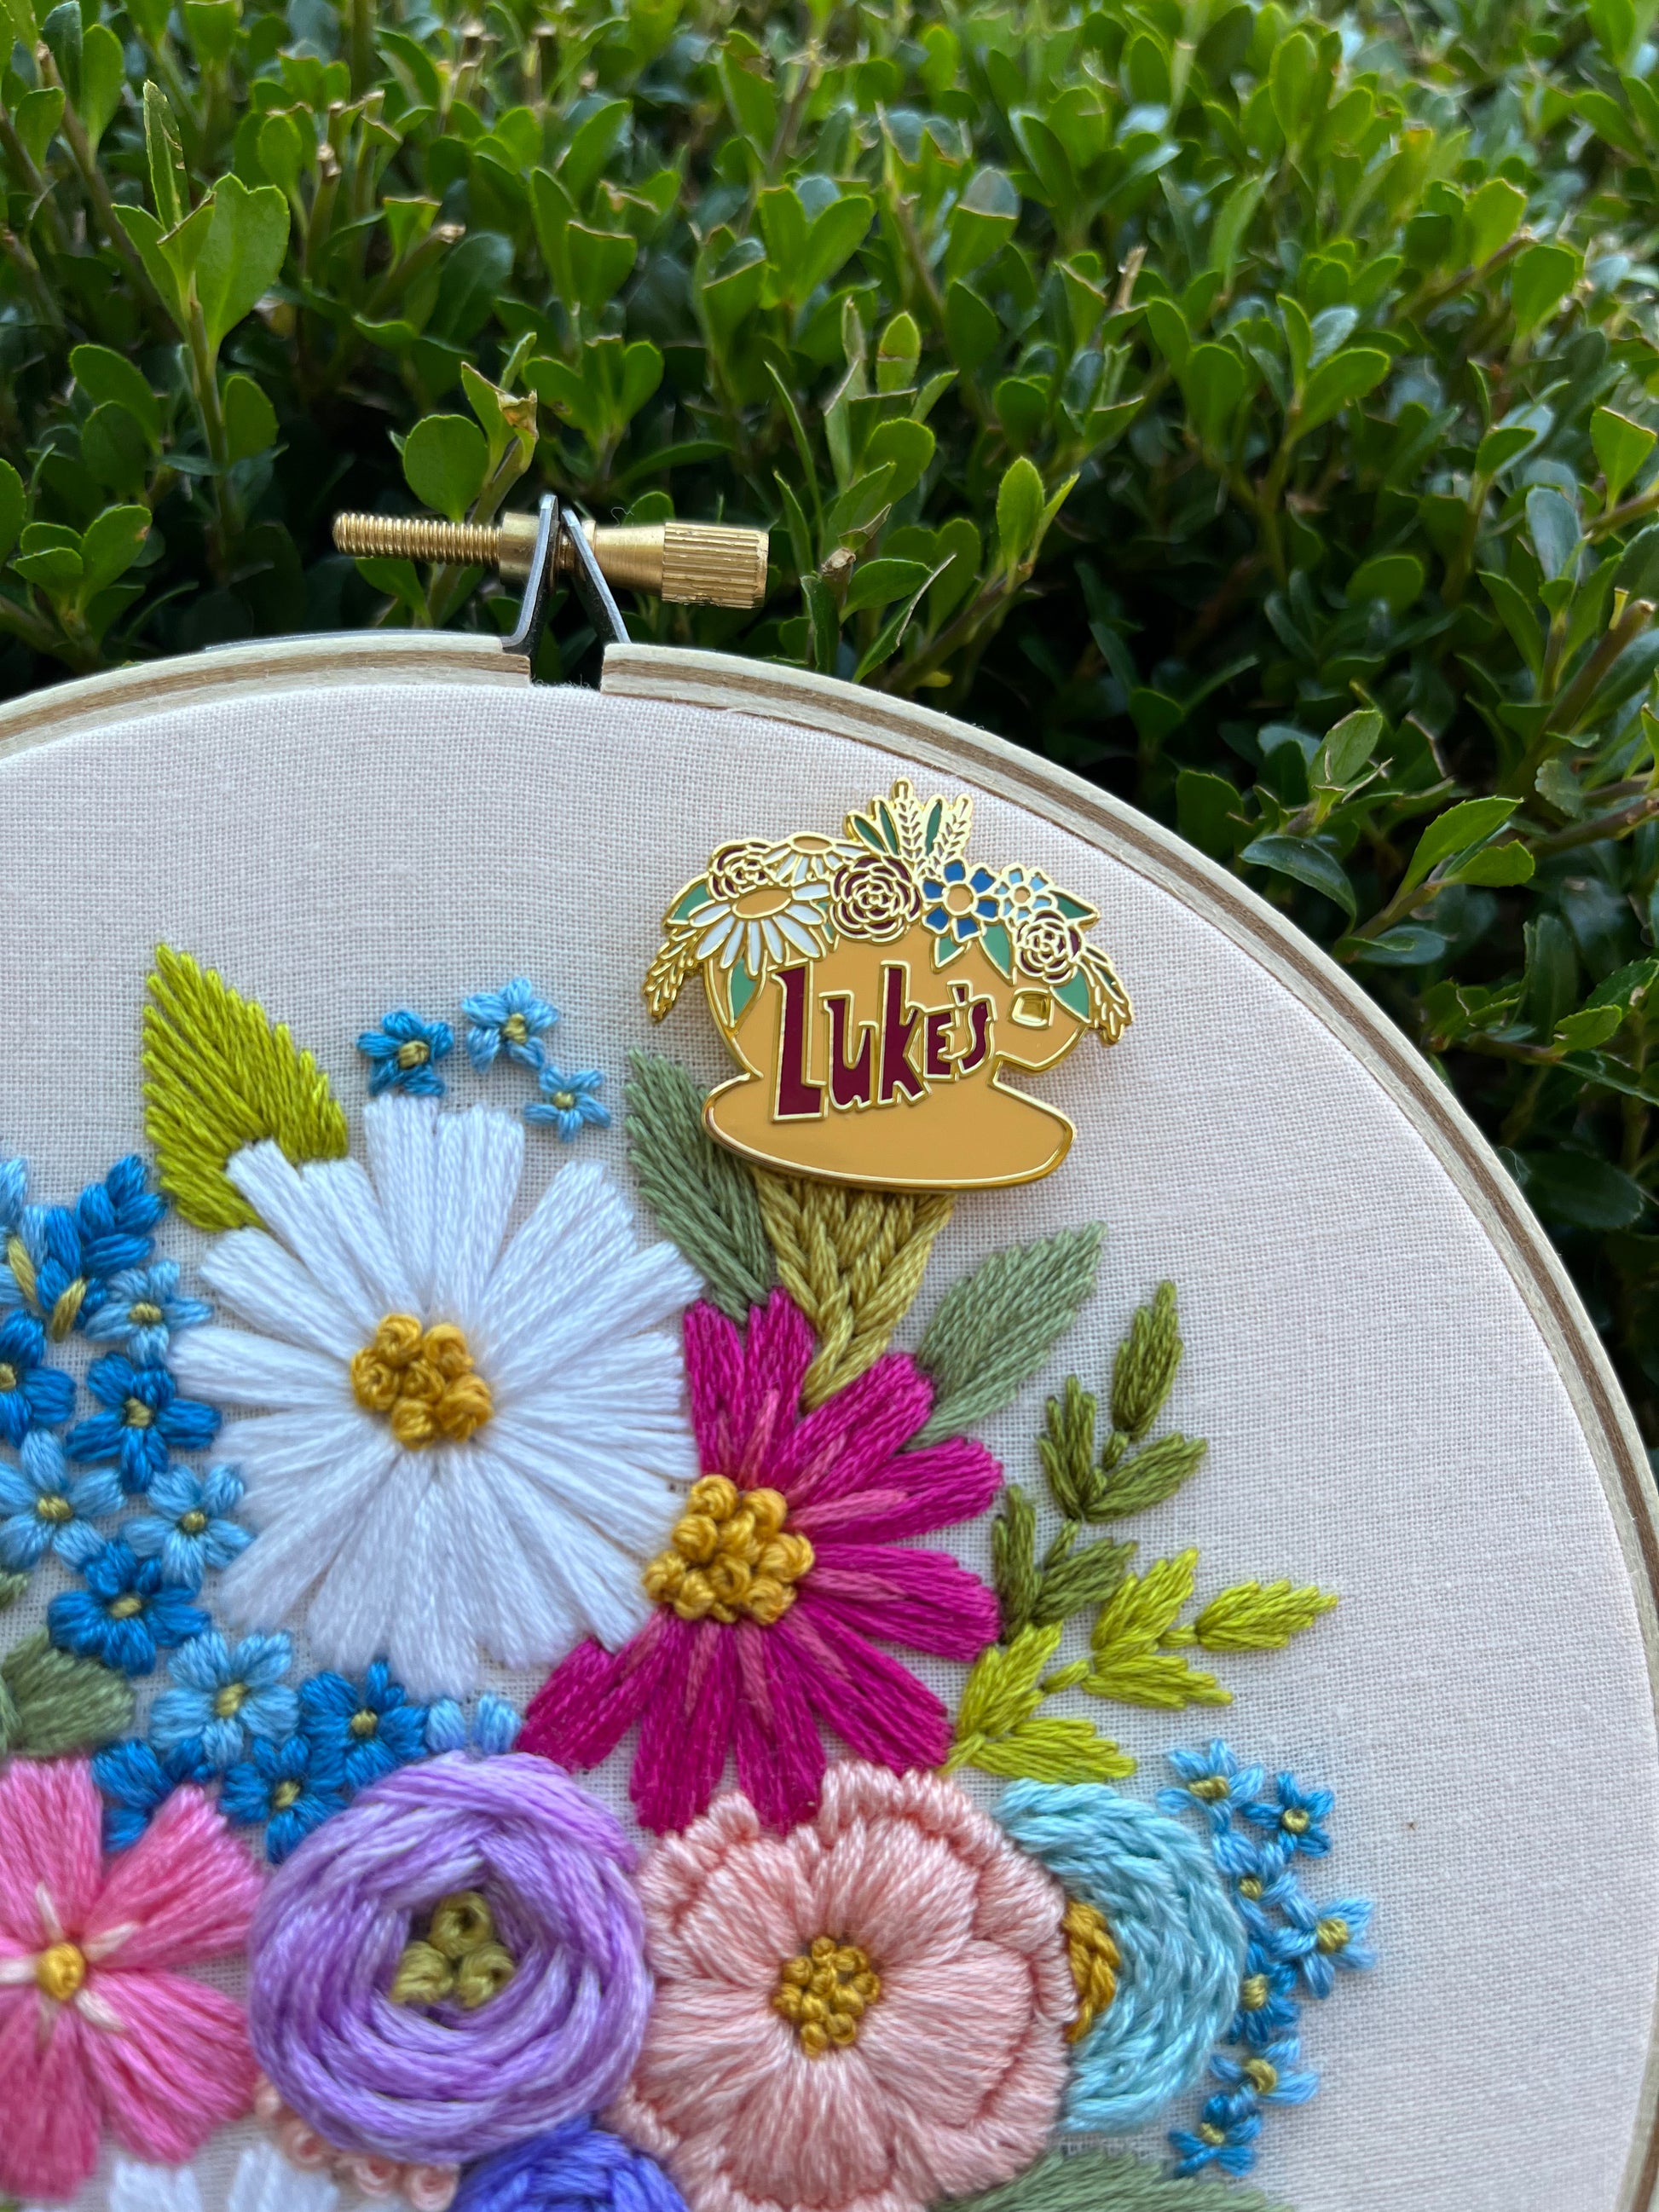 Embroidery Needle Minders – Bangor Haberdashery